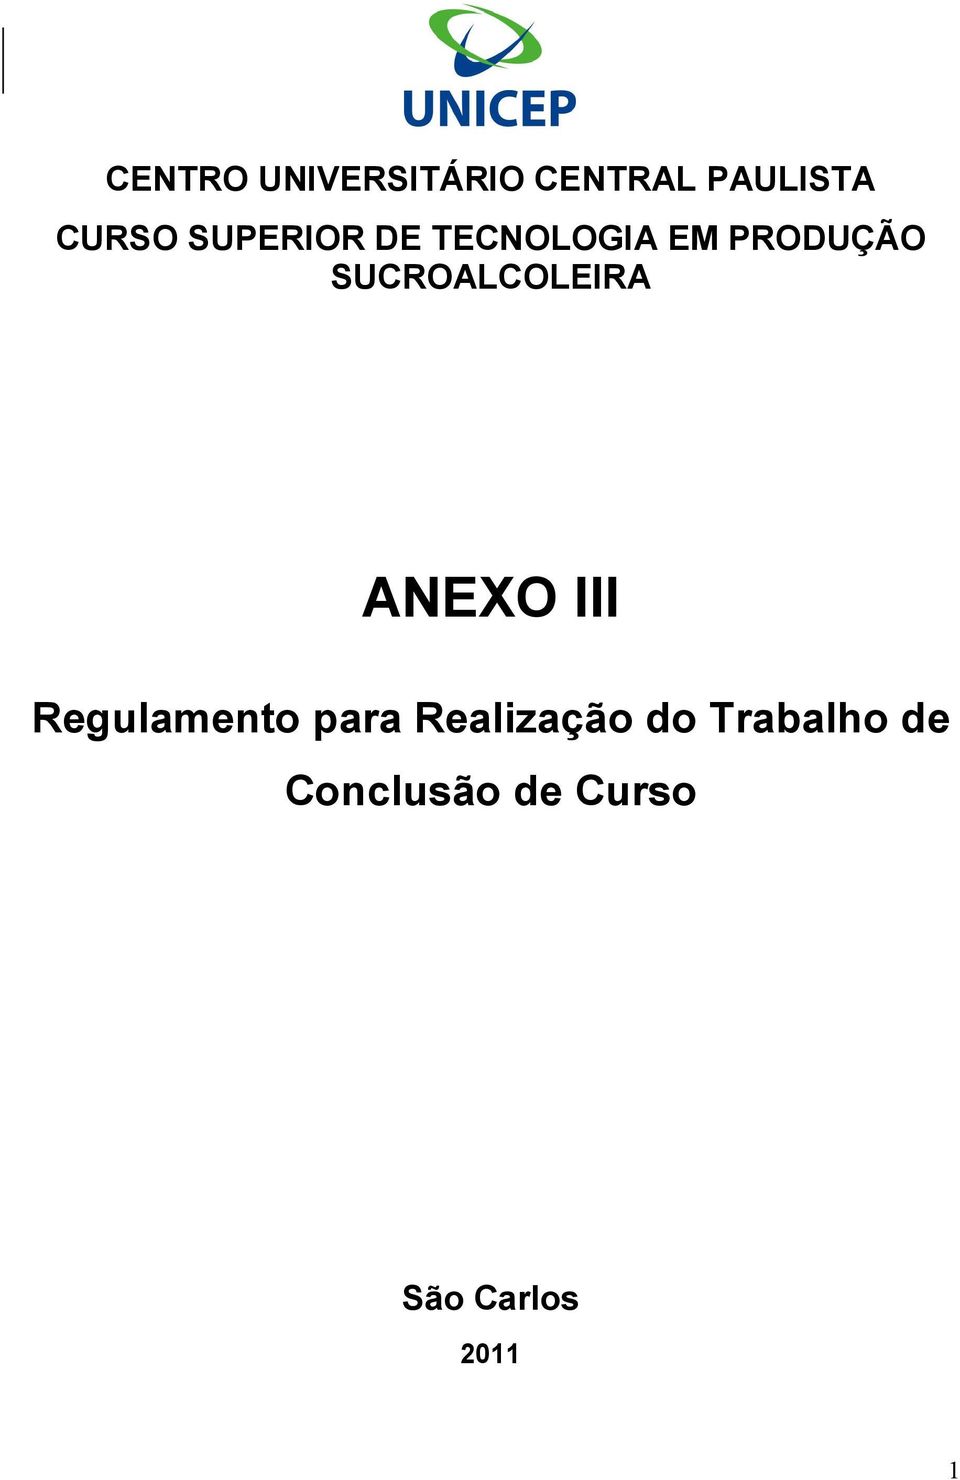 SUCROALCOLEIRA ANEXO III Regulamento para